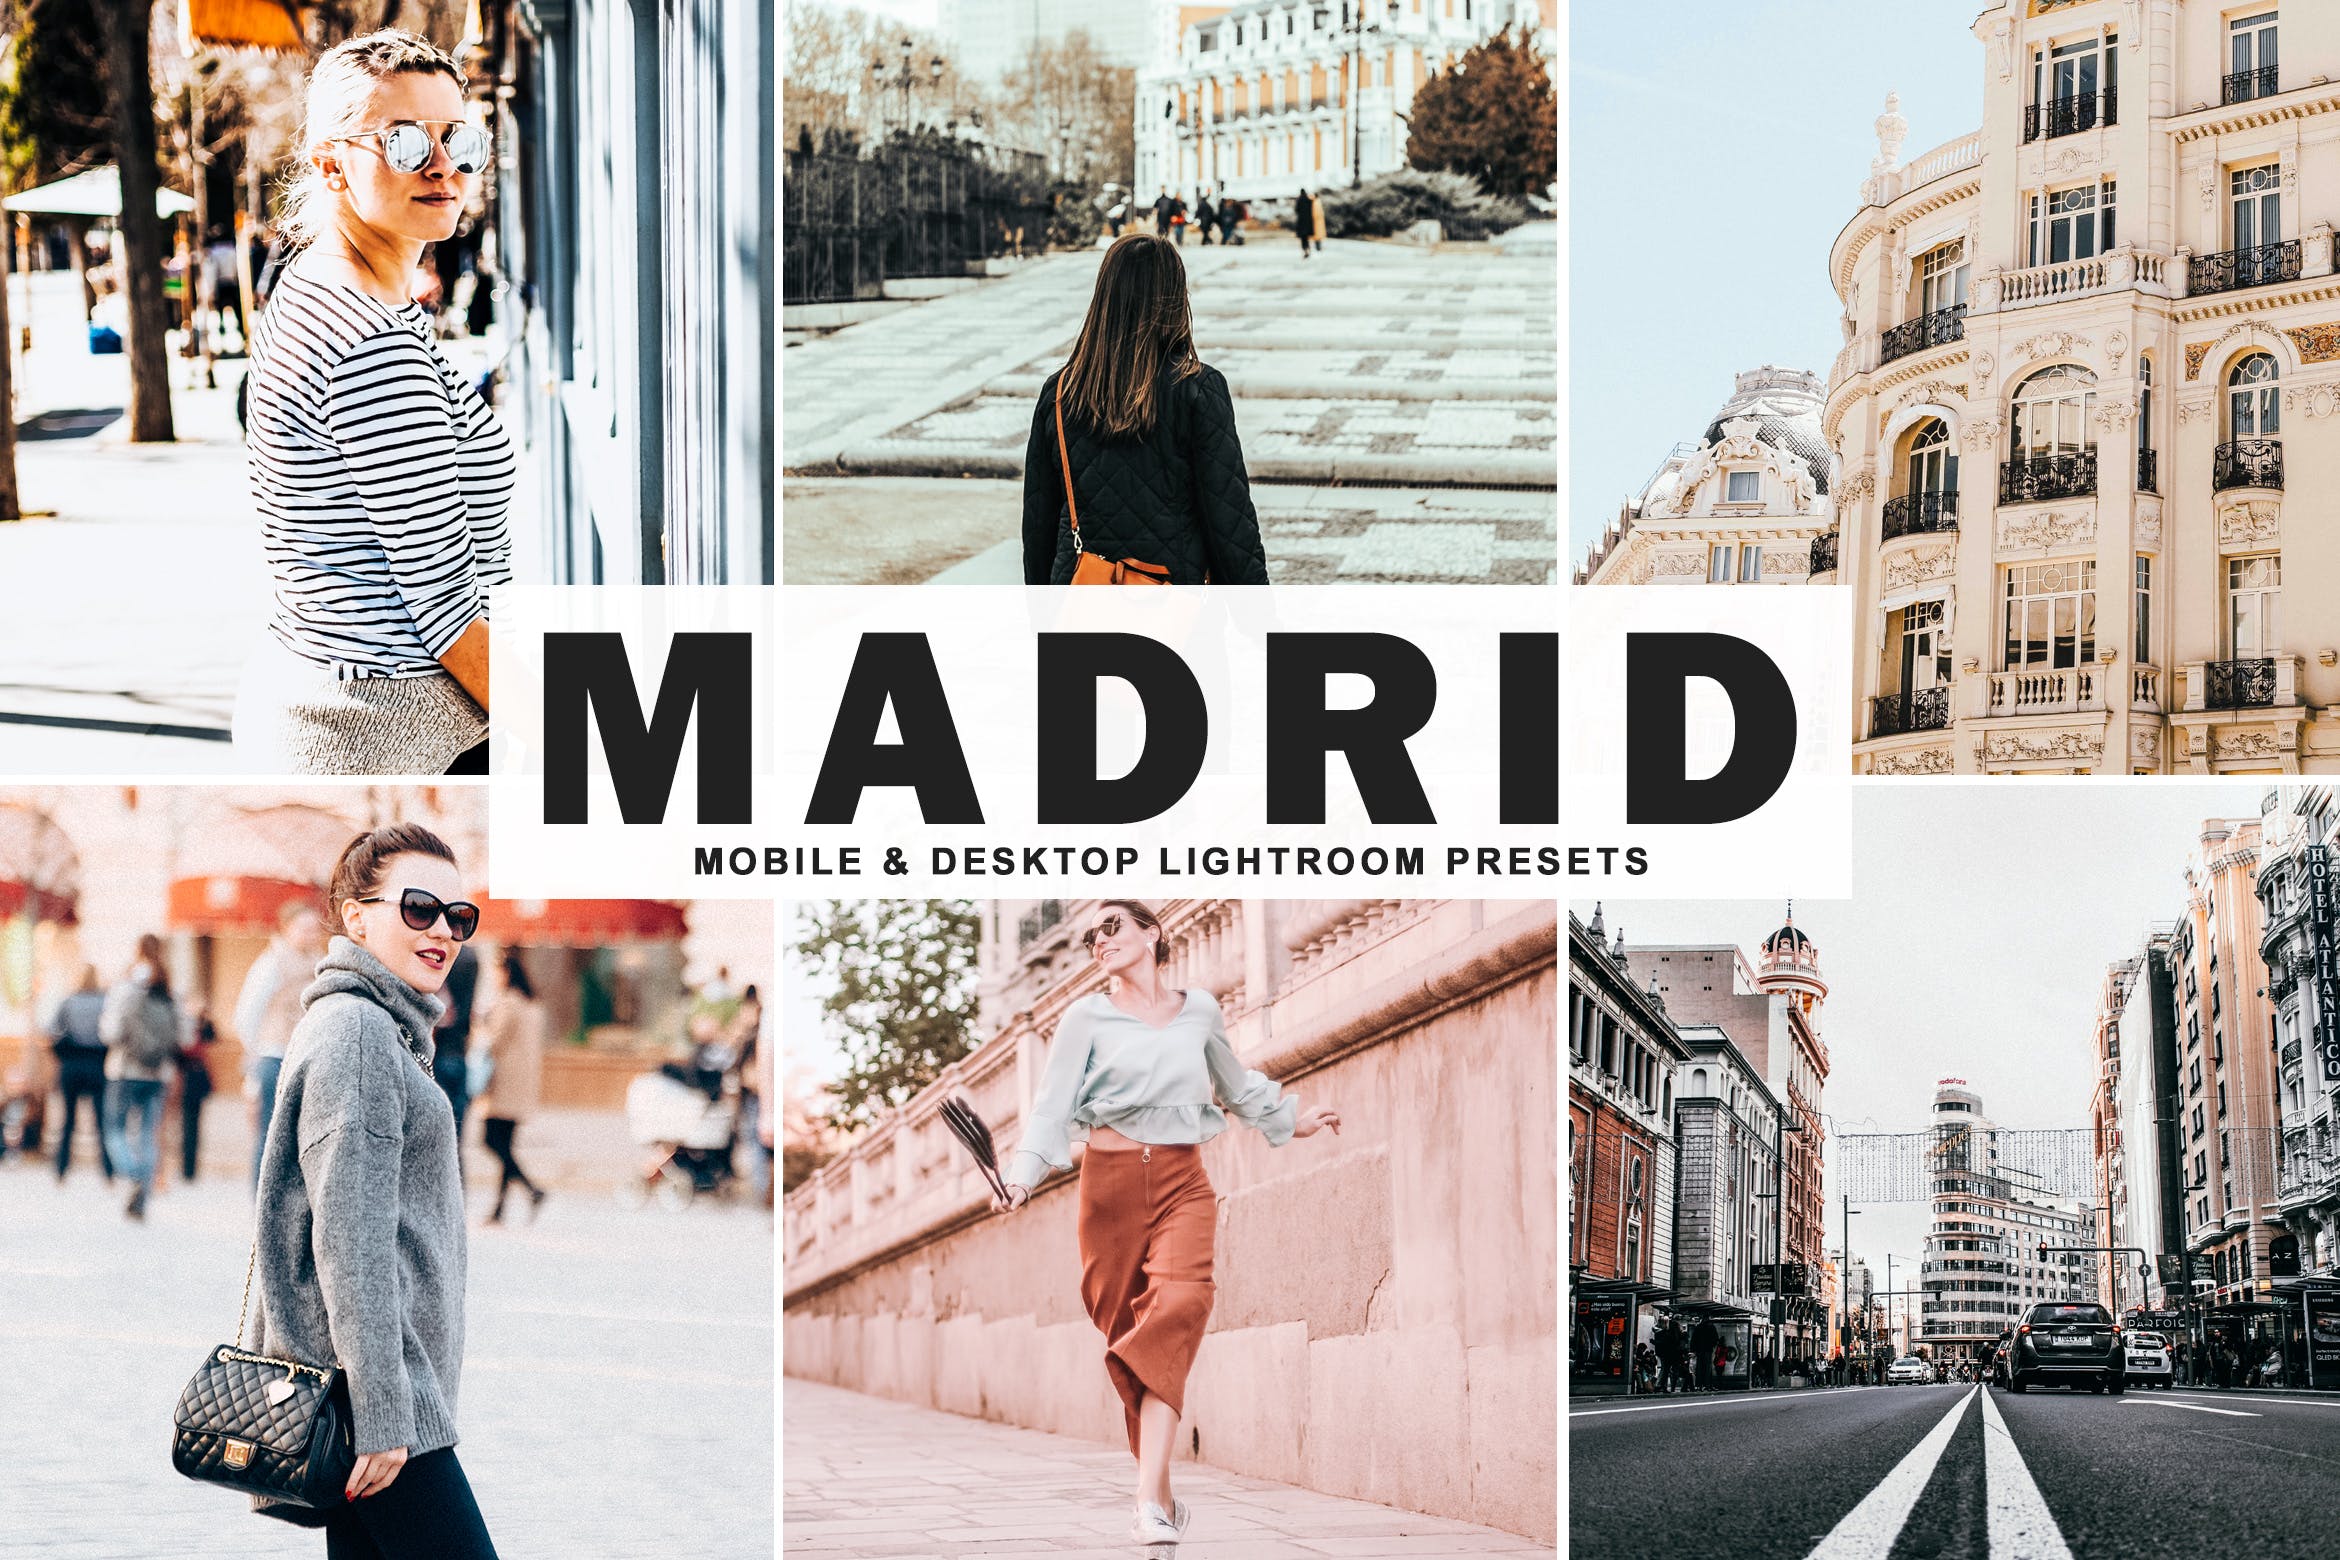 街拍时装摄影必备的调色滤镜16图库精选LR预设 Madrid Mobile & Desktop Lightroom Presets插图